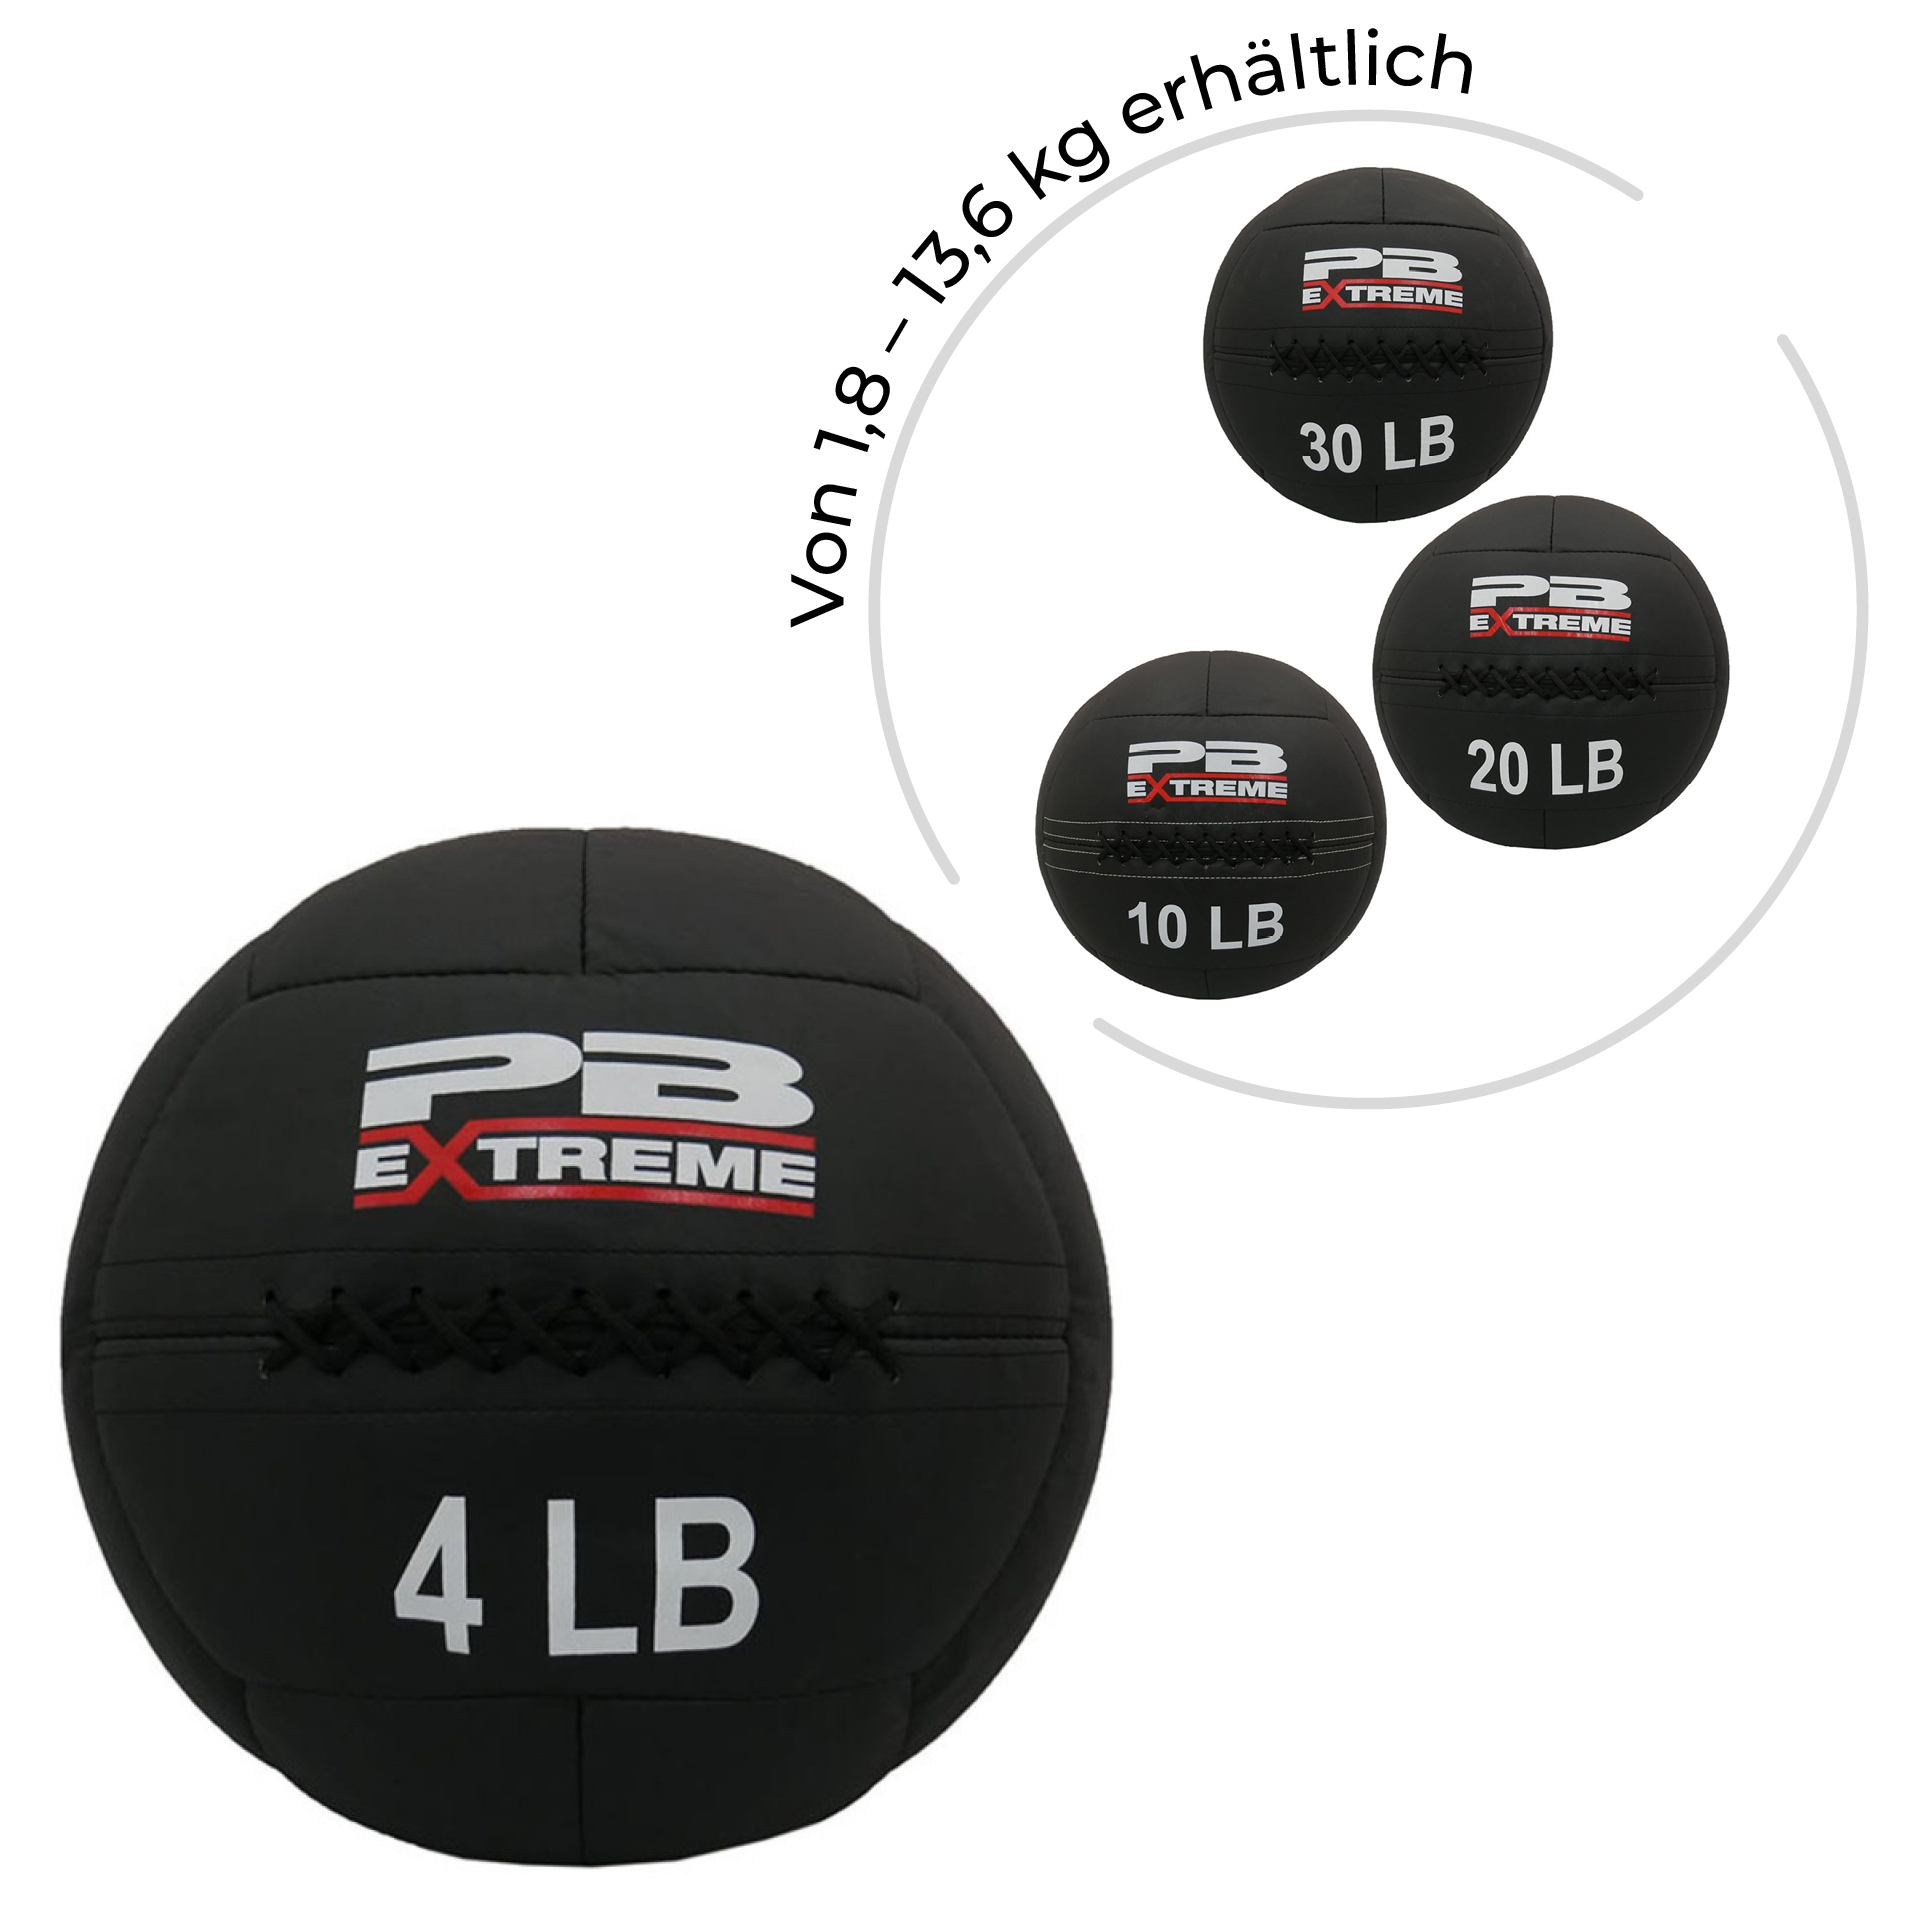 PB Extreme Soft Elite Medizinbälle - schwarz 4 lbs (1,81 kg)